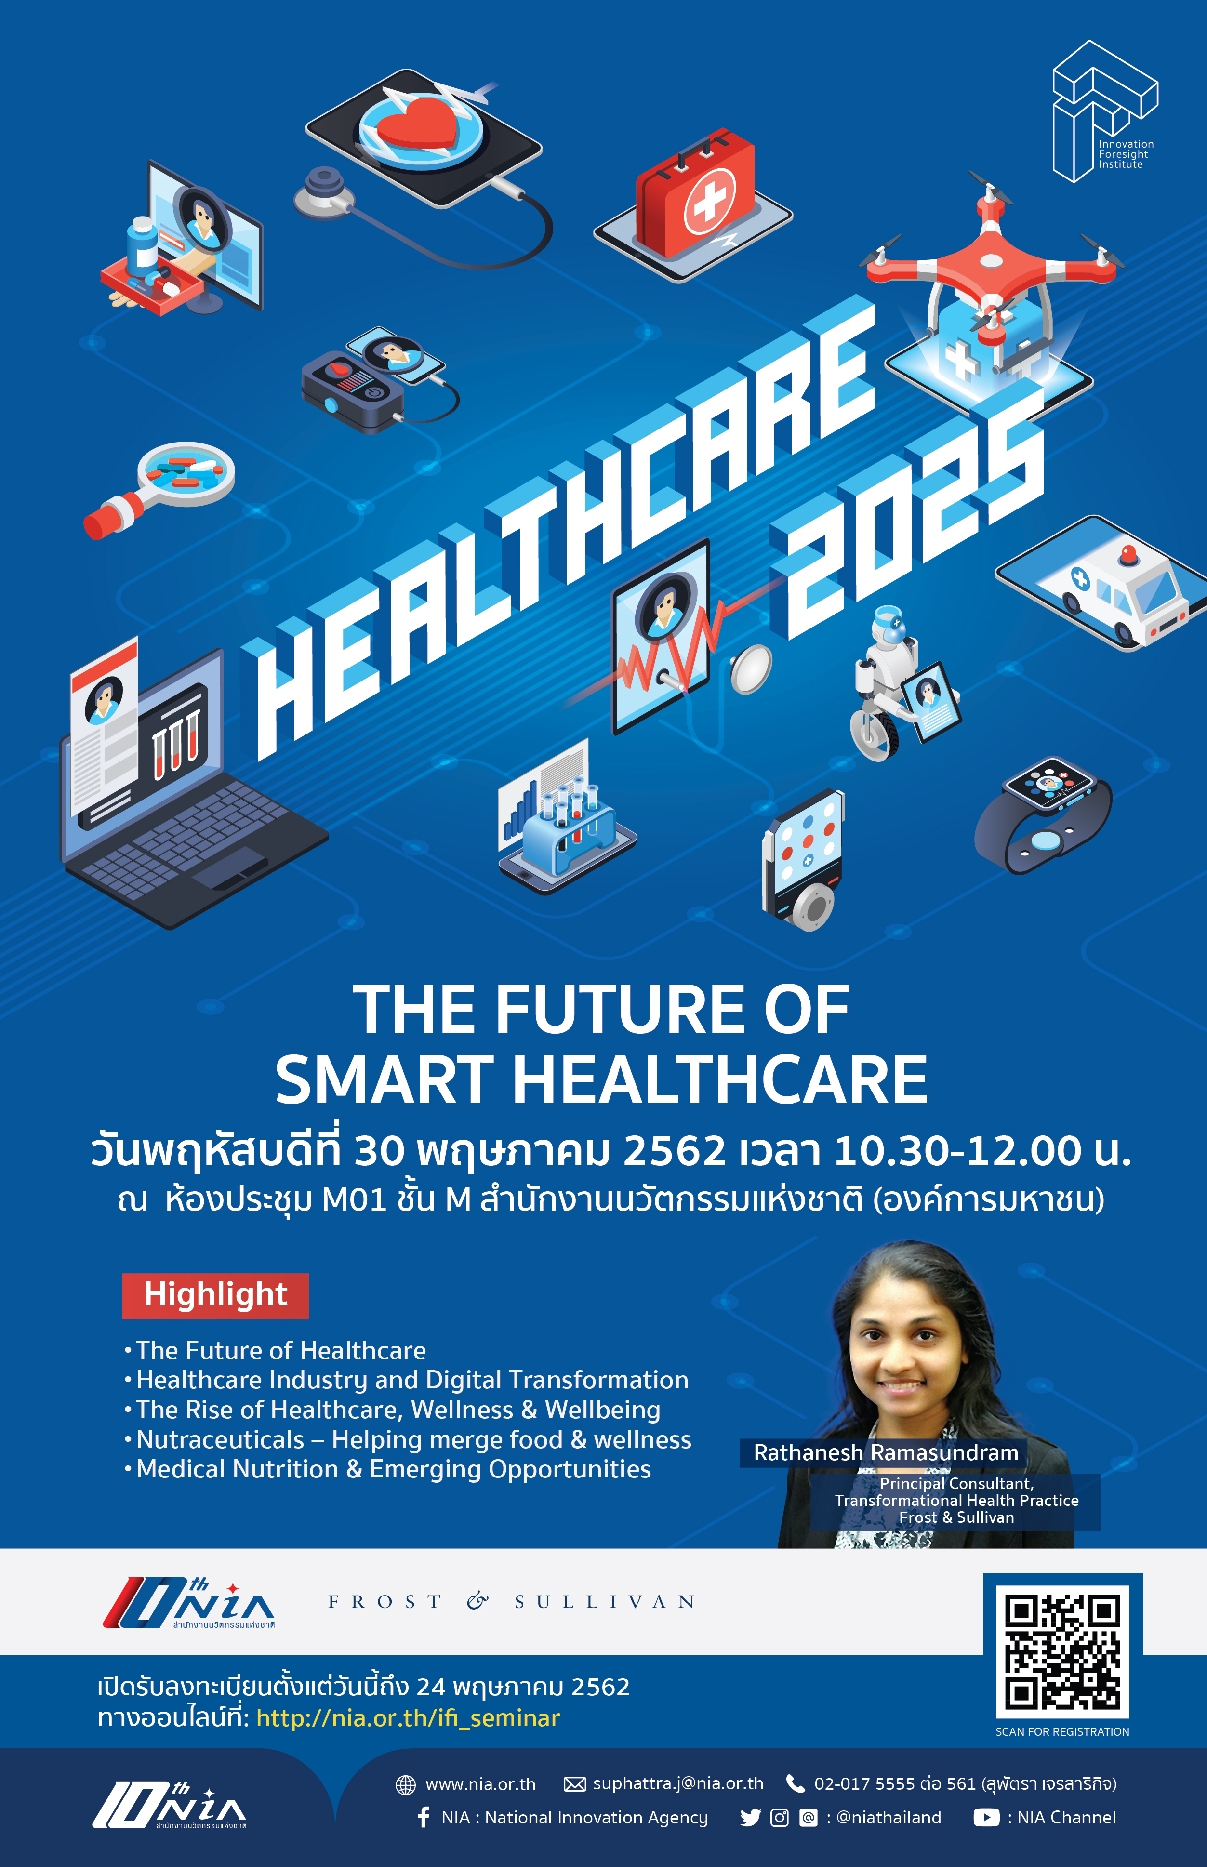 healthcare-2025-the-future-of-smart-healthcare